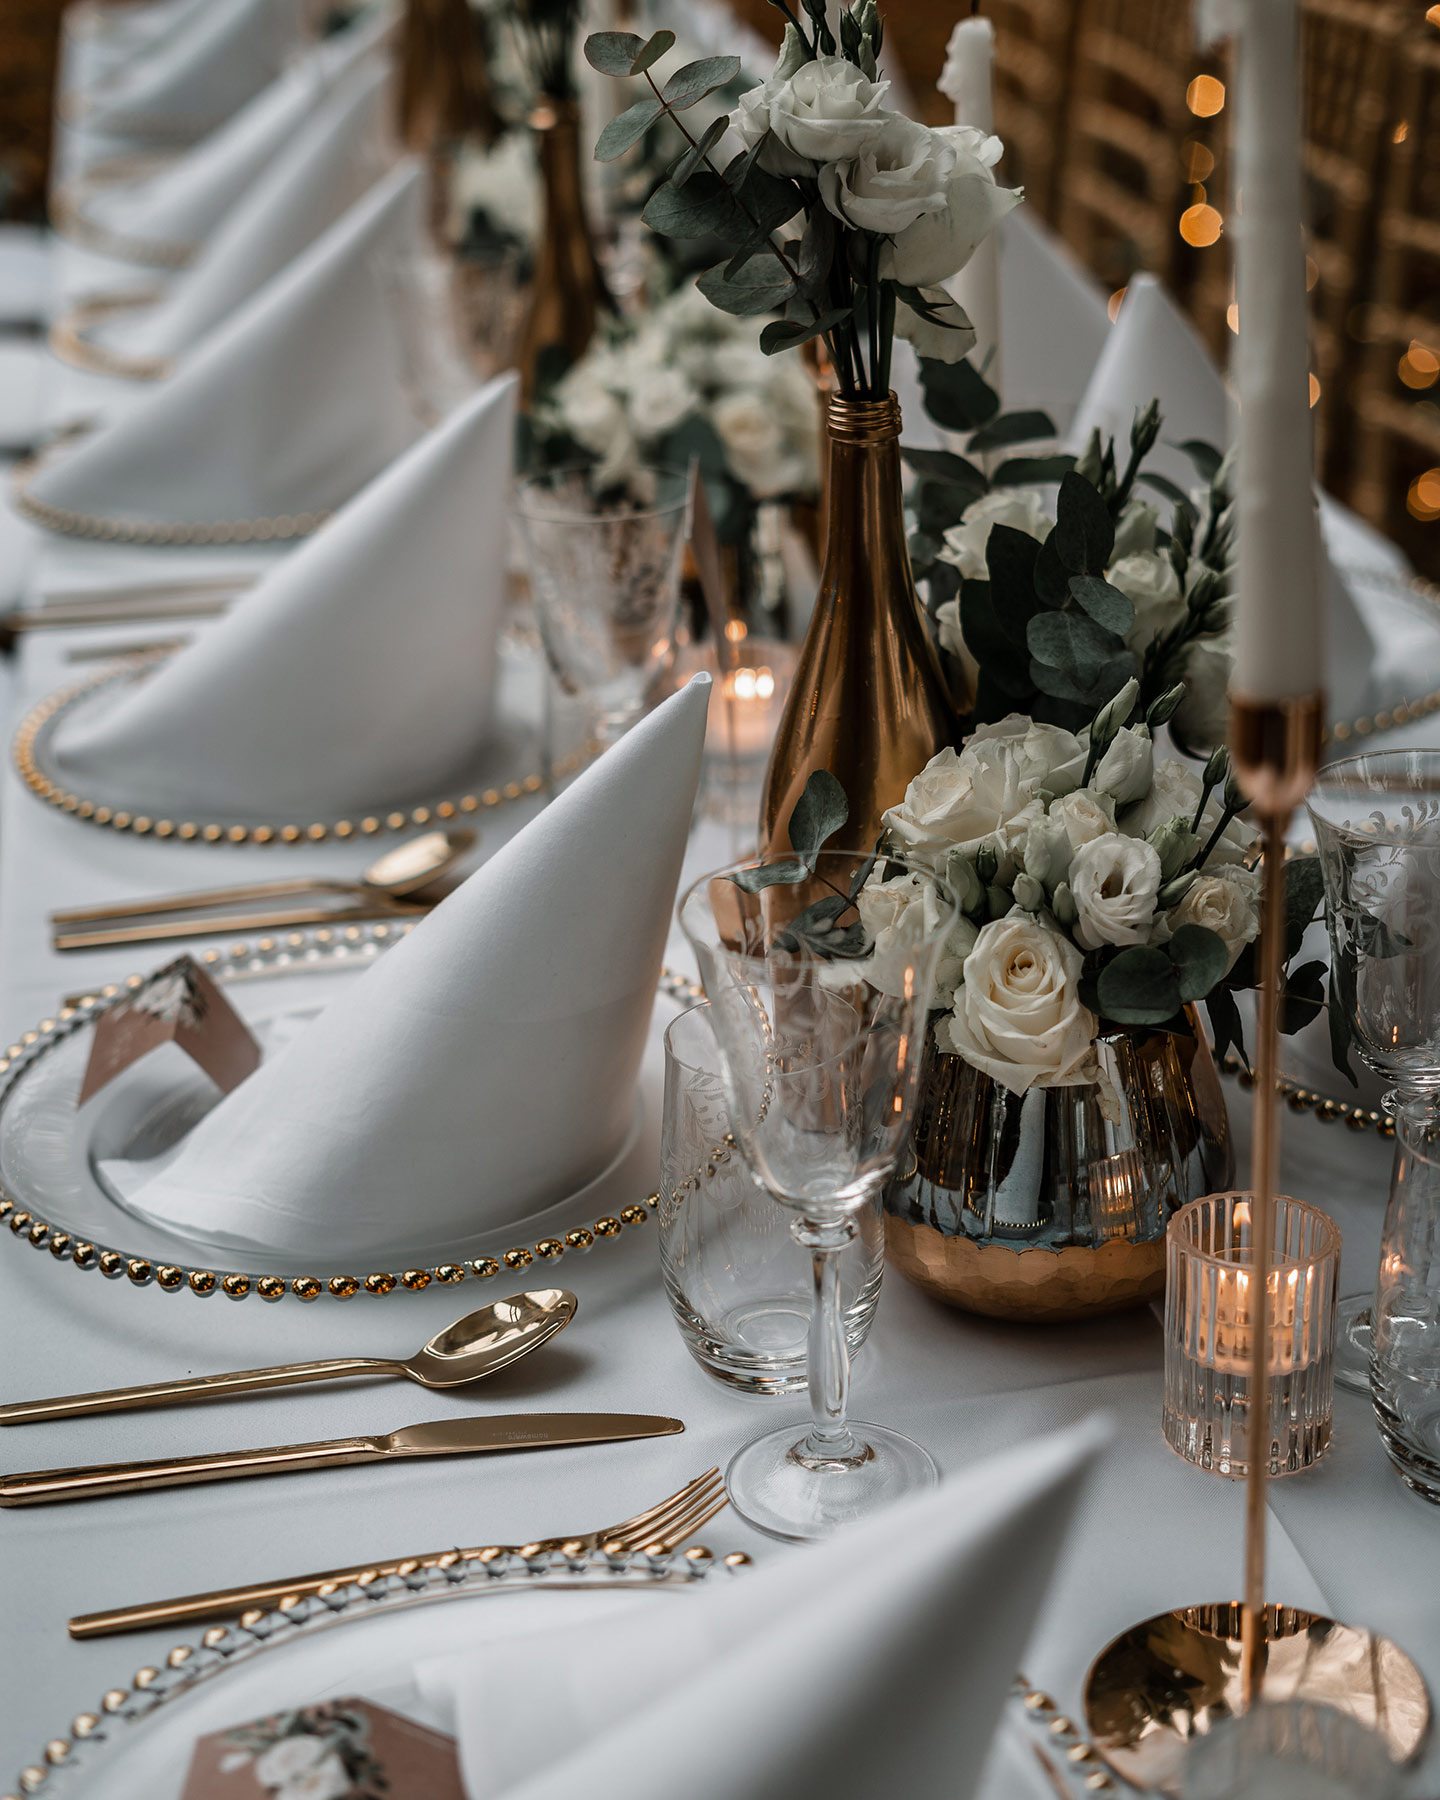 Der Hochzeitstisch wird in Detailaufnahme gezeigt: die durchsichtigen großen Teller mit Goldrand, goldenes Besteck und die Roségoldenen Vasen mit weißen Rosen und grünen Blättern geben ein schönes Bild ab.